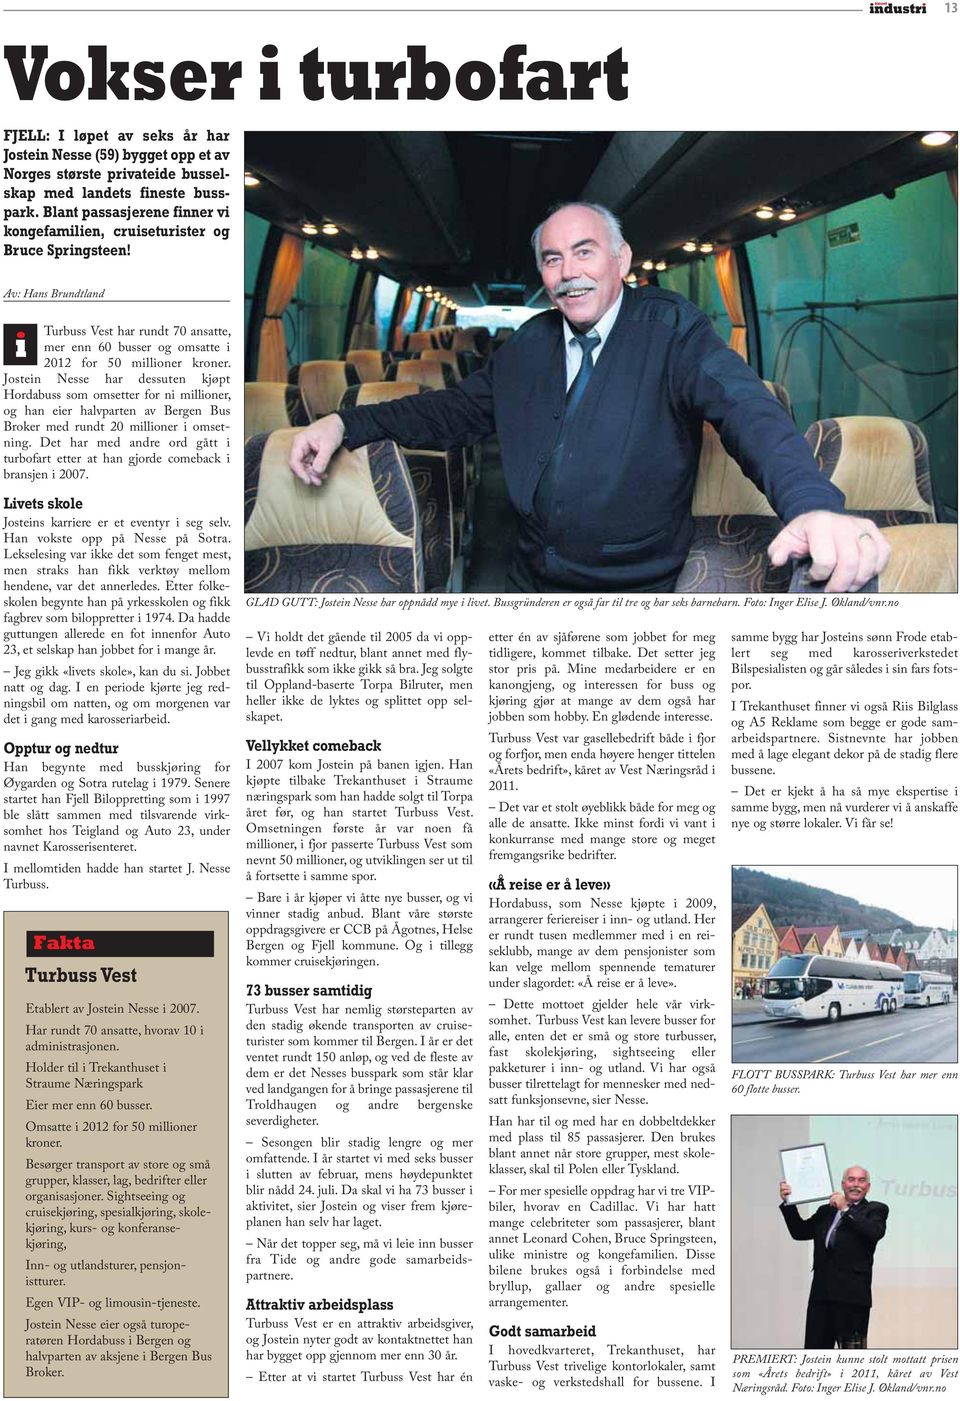 Jostein Nesse har dessuten kjøpt Hordabuss som omsetter for ni millioner, og han eier halvparten av Bergen Bus Broker med rundt 20 millioner i omsetning.